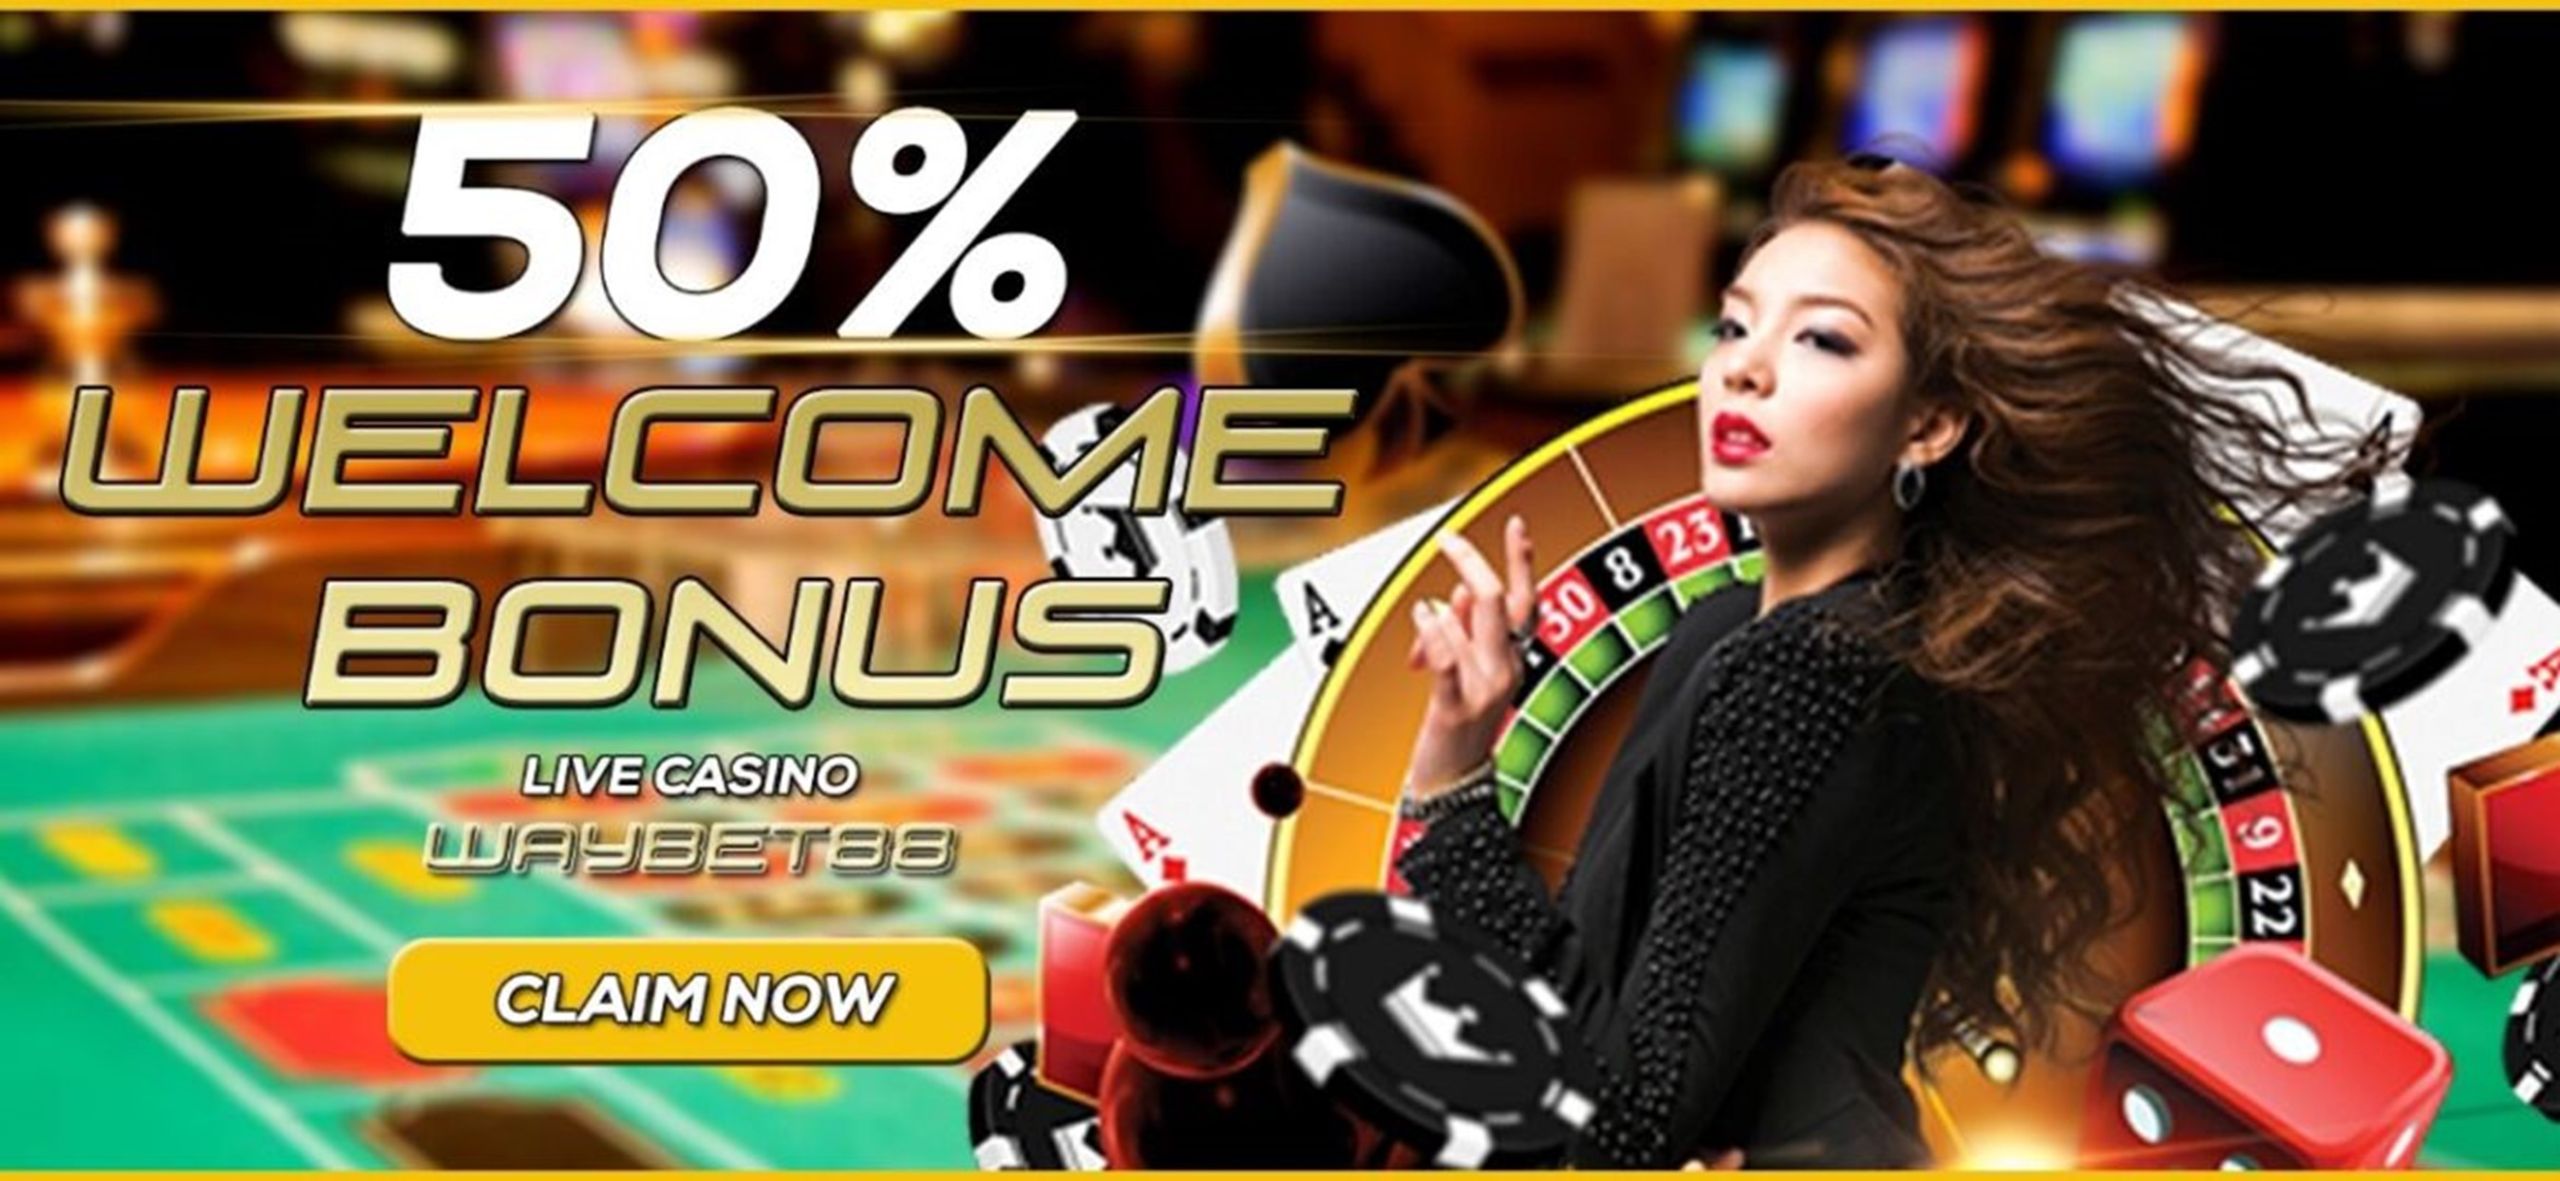 Referral Bonus For Online Casino